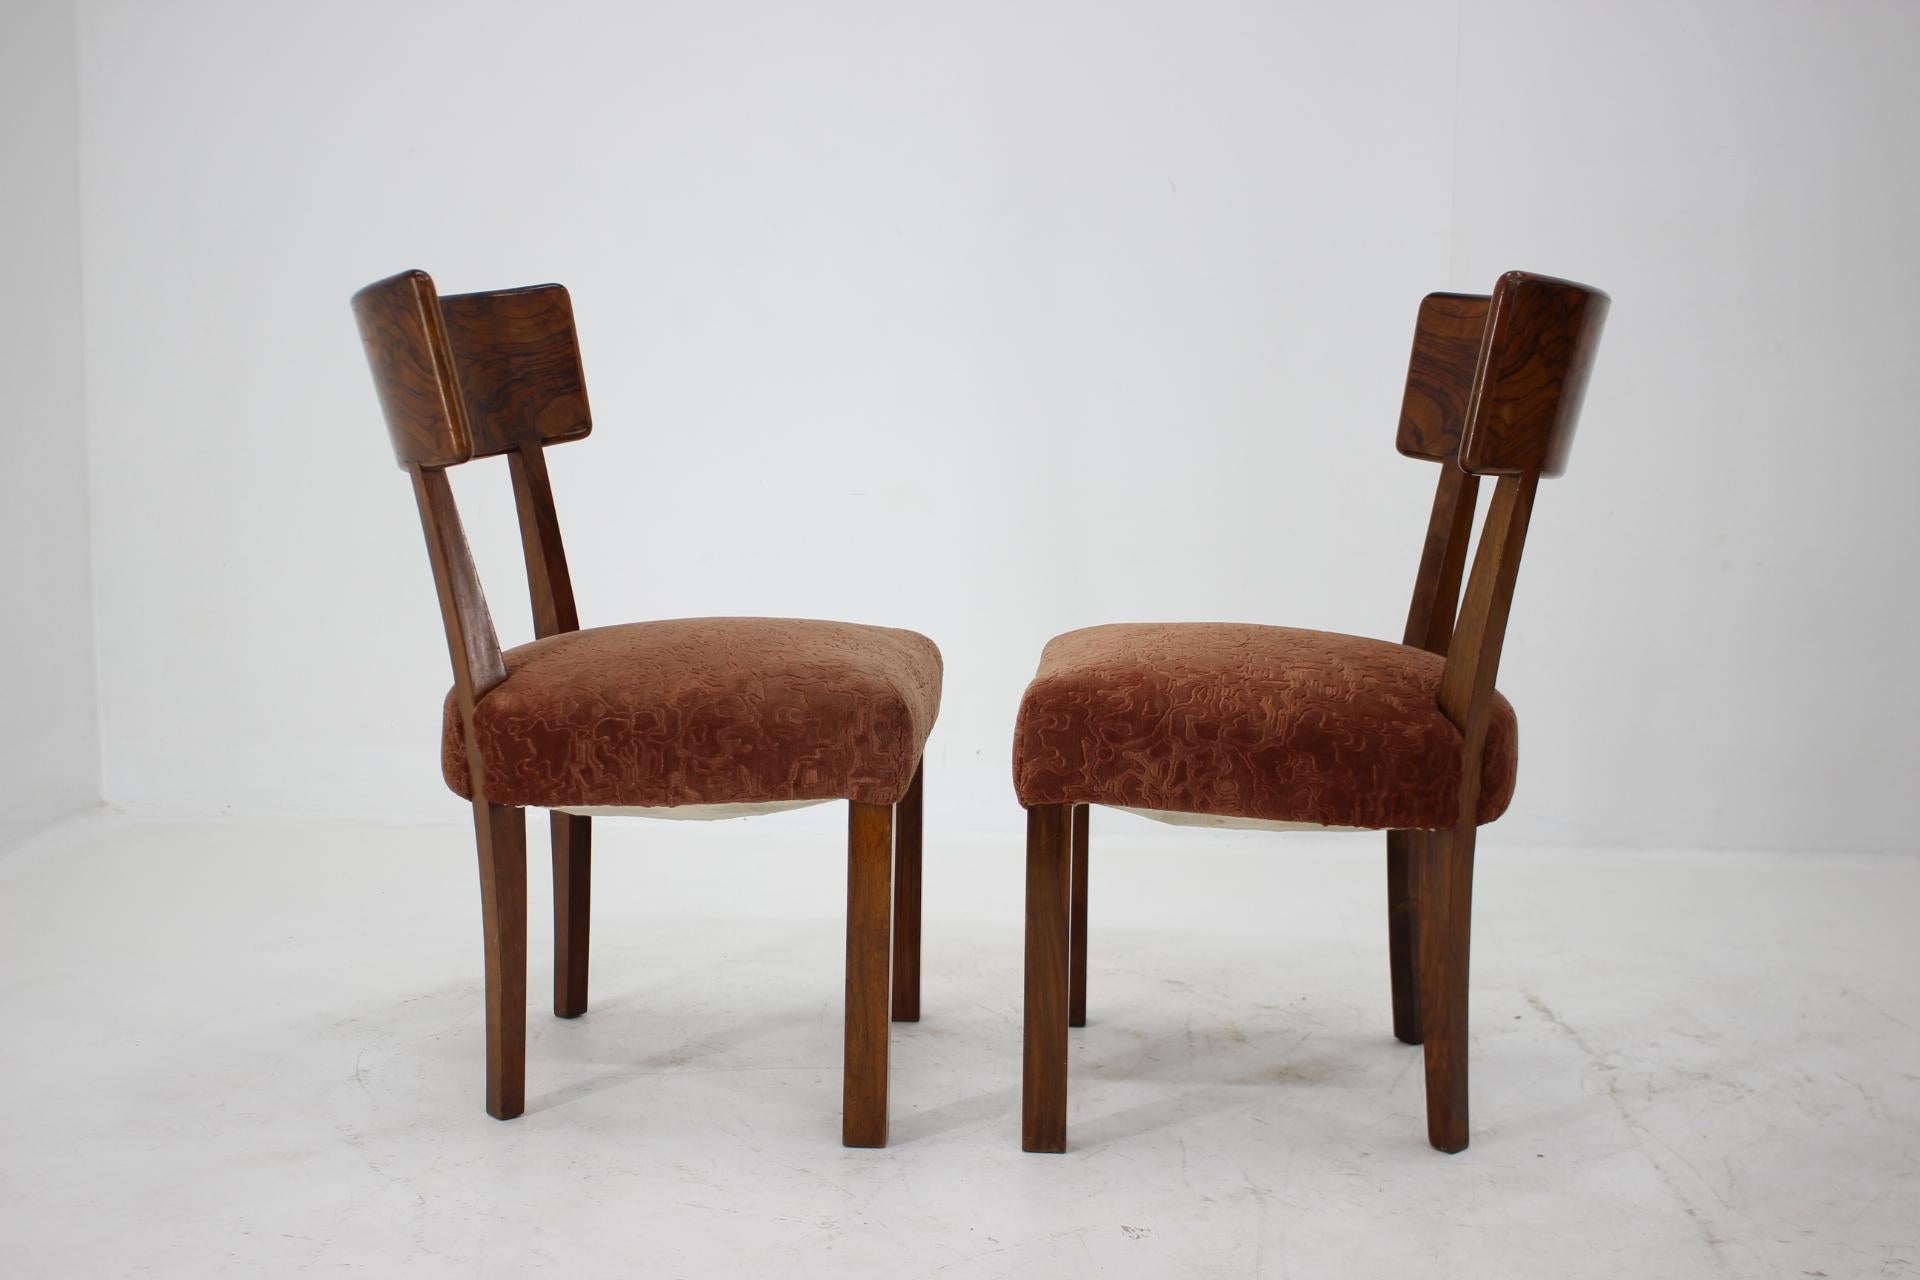 1930s kitchen chairs